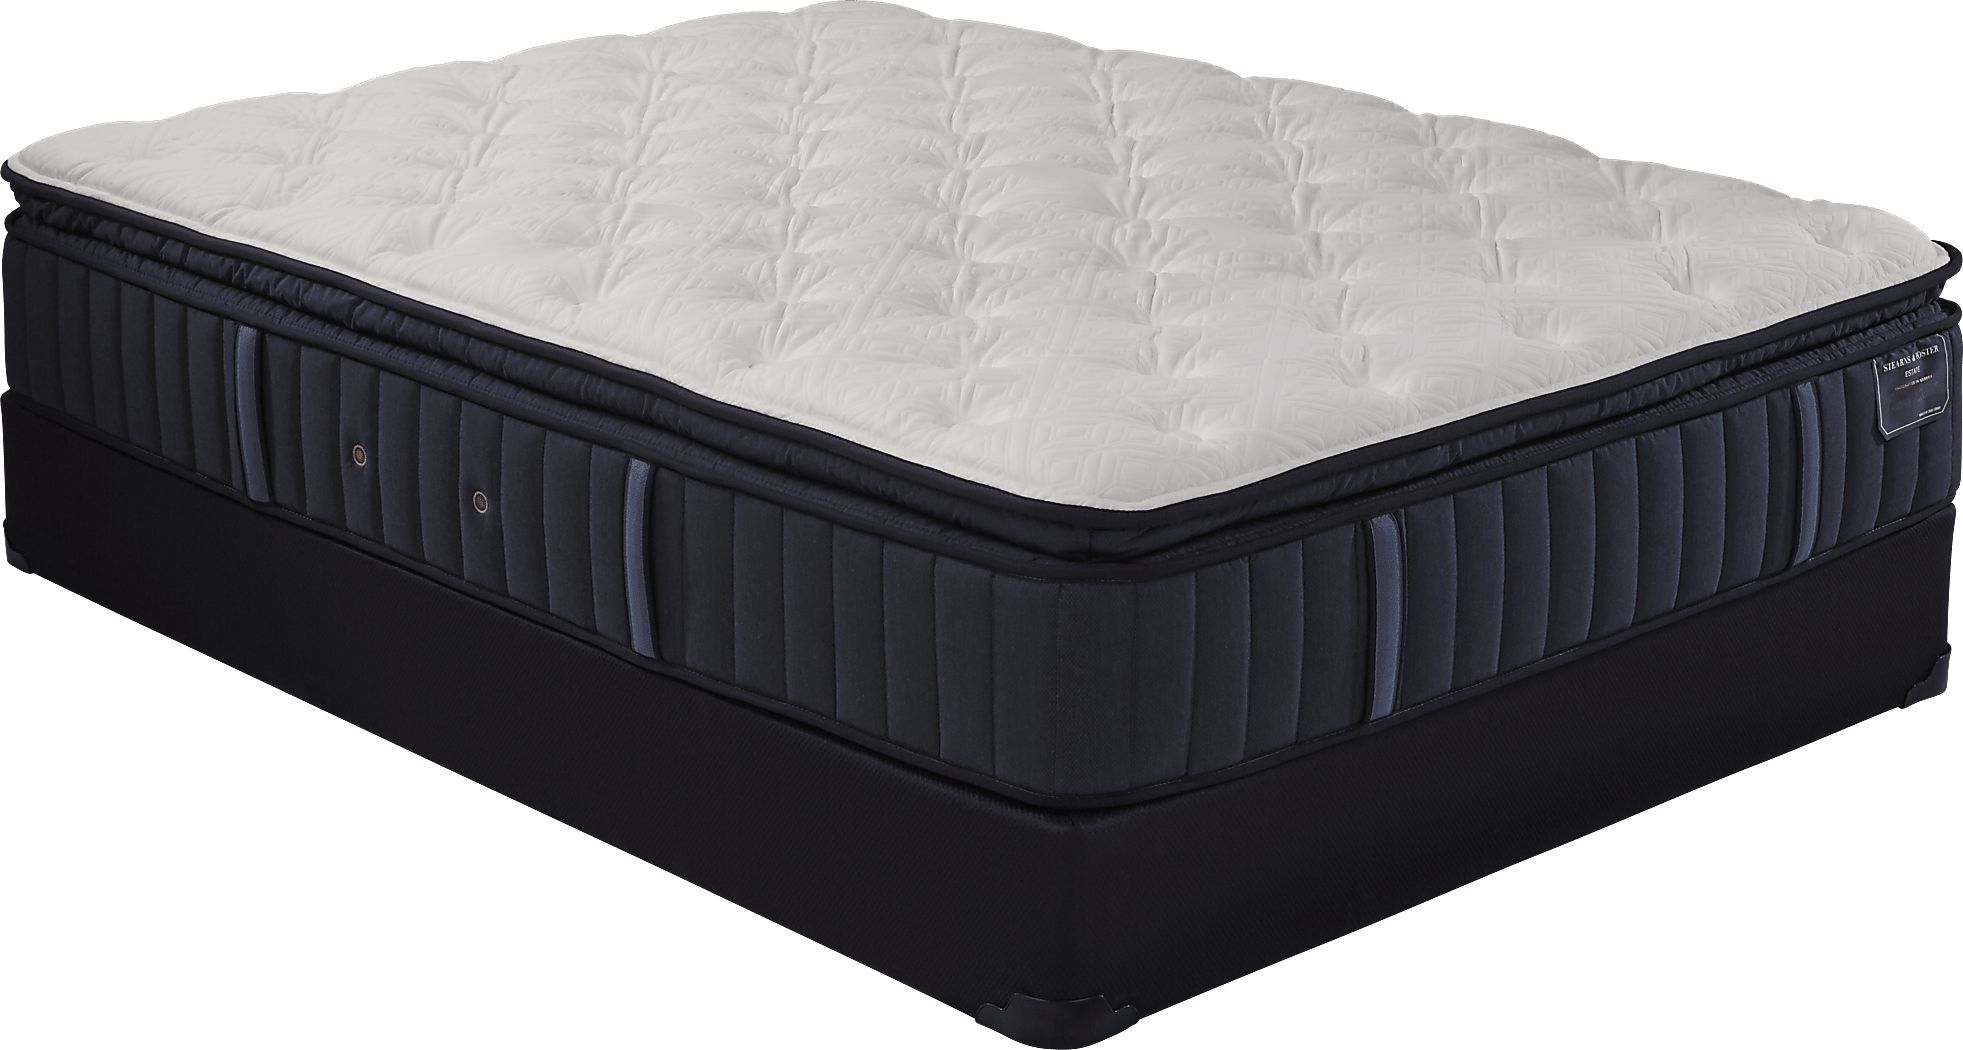 stearns & foster hurston luxury plush euro pillowtop mattress